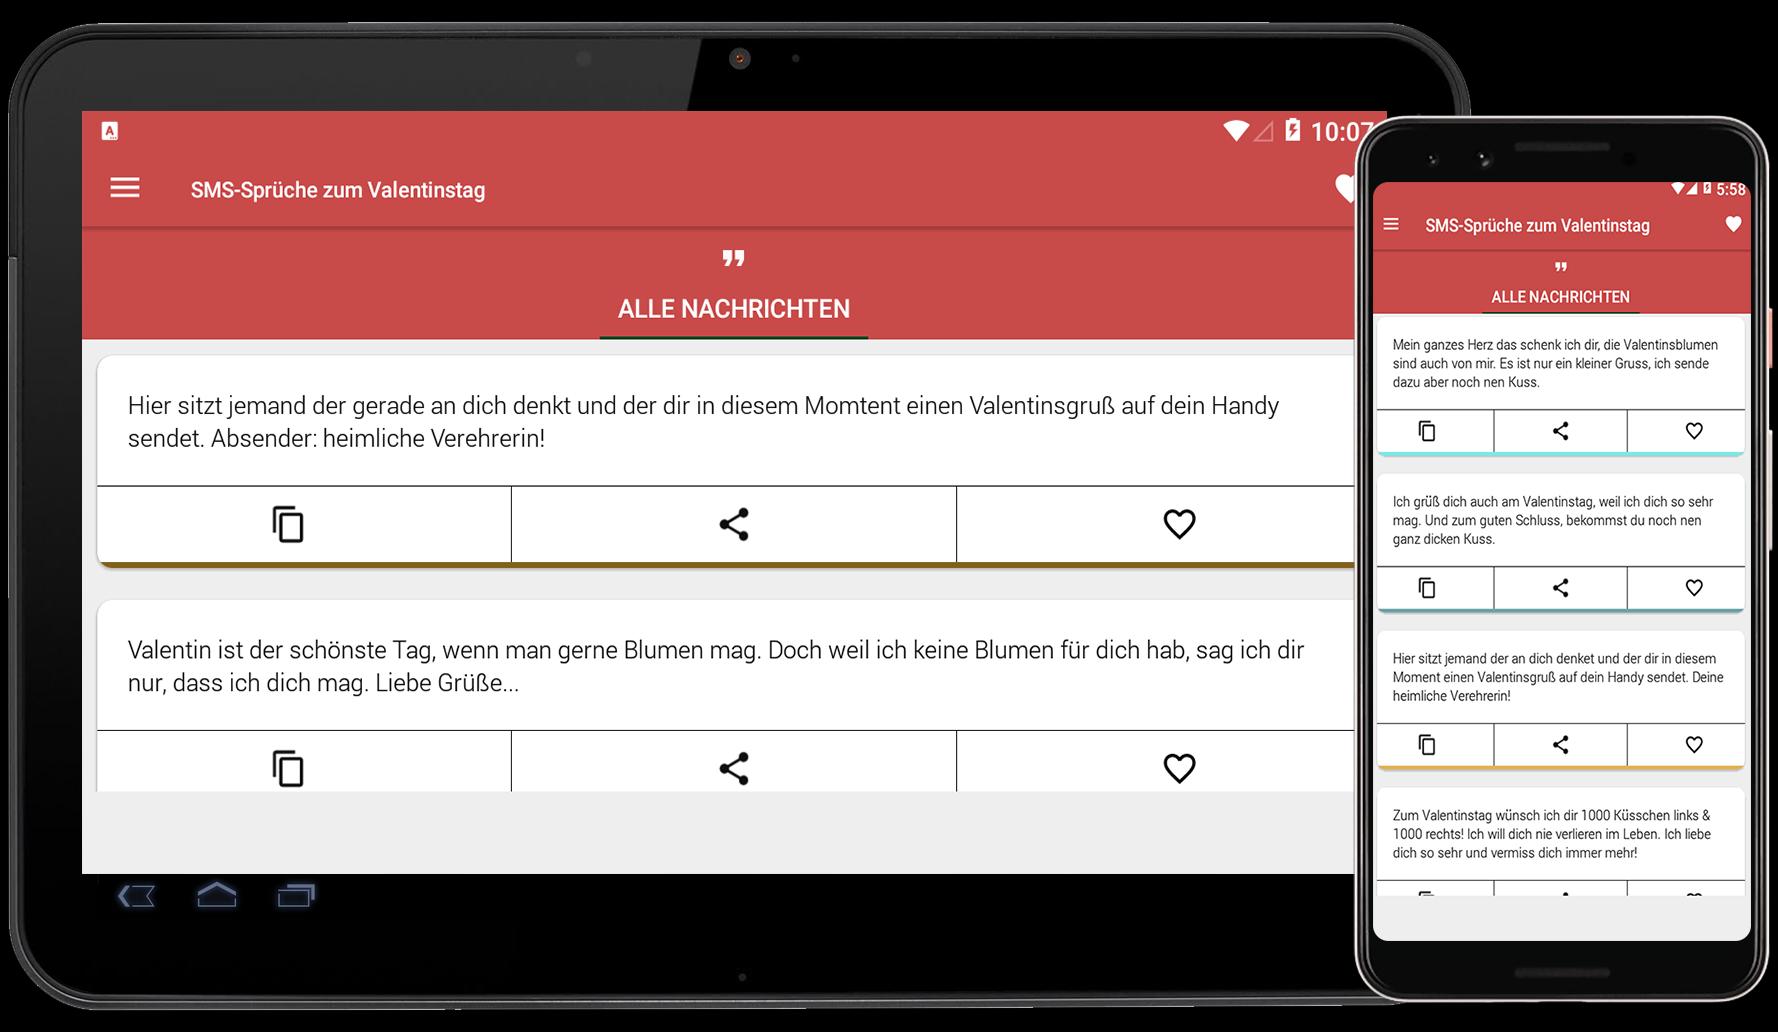 Sms Spruche Zum Valentinstag 2020 For Android Apk Download - wie kann man in roblox bei google chrome jemanden eine